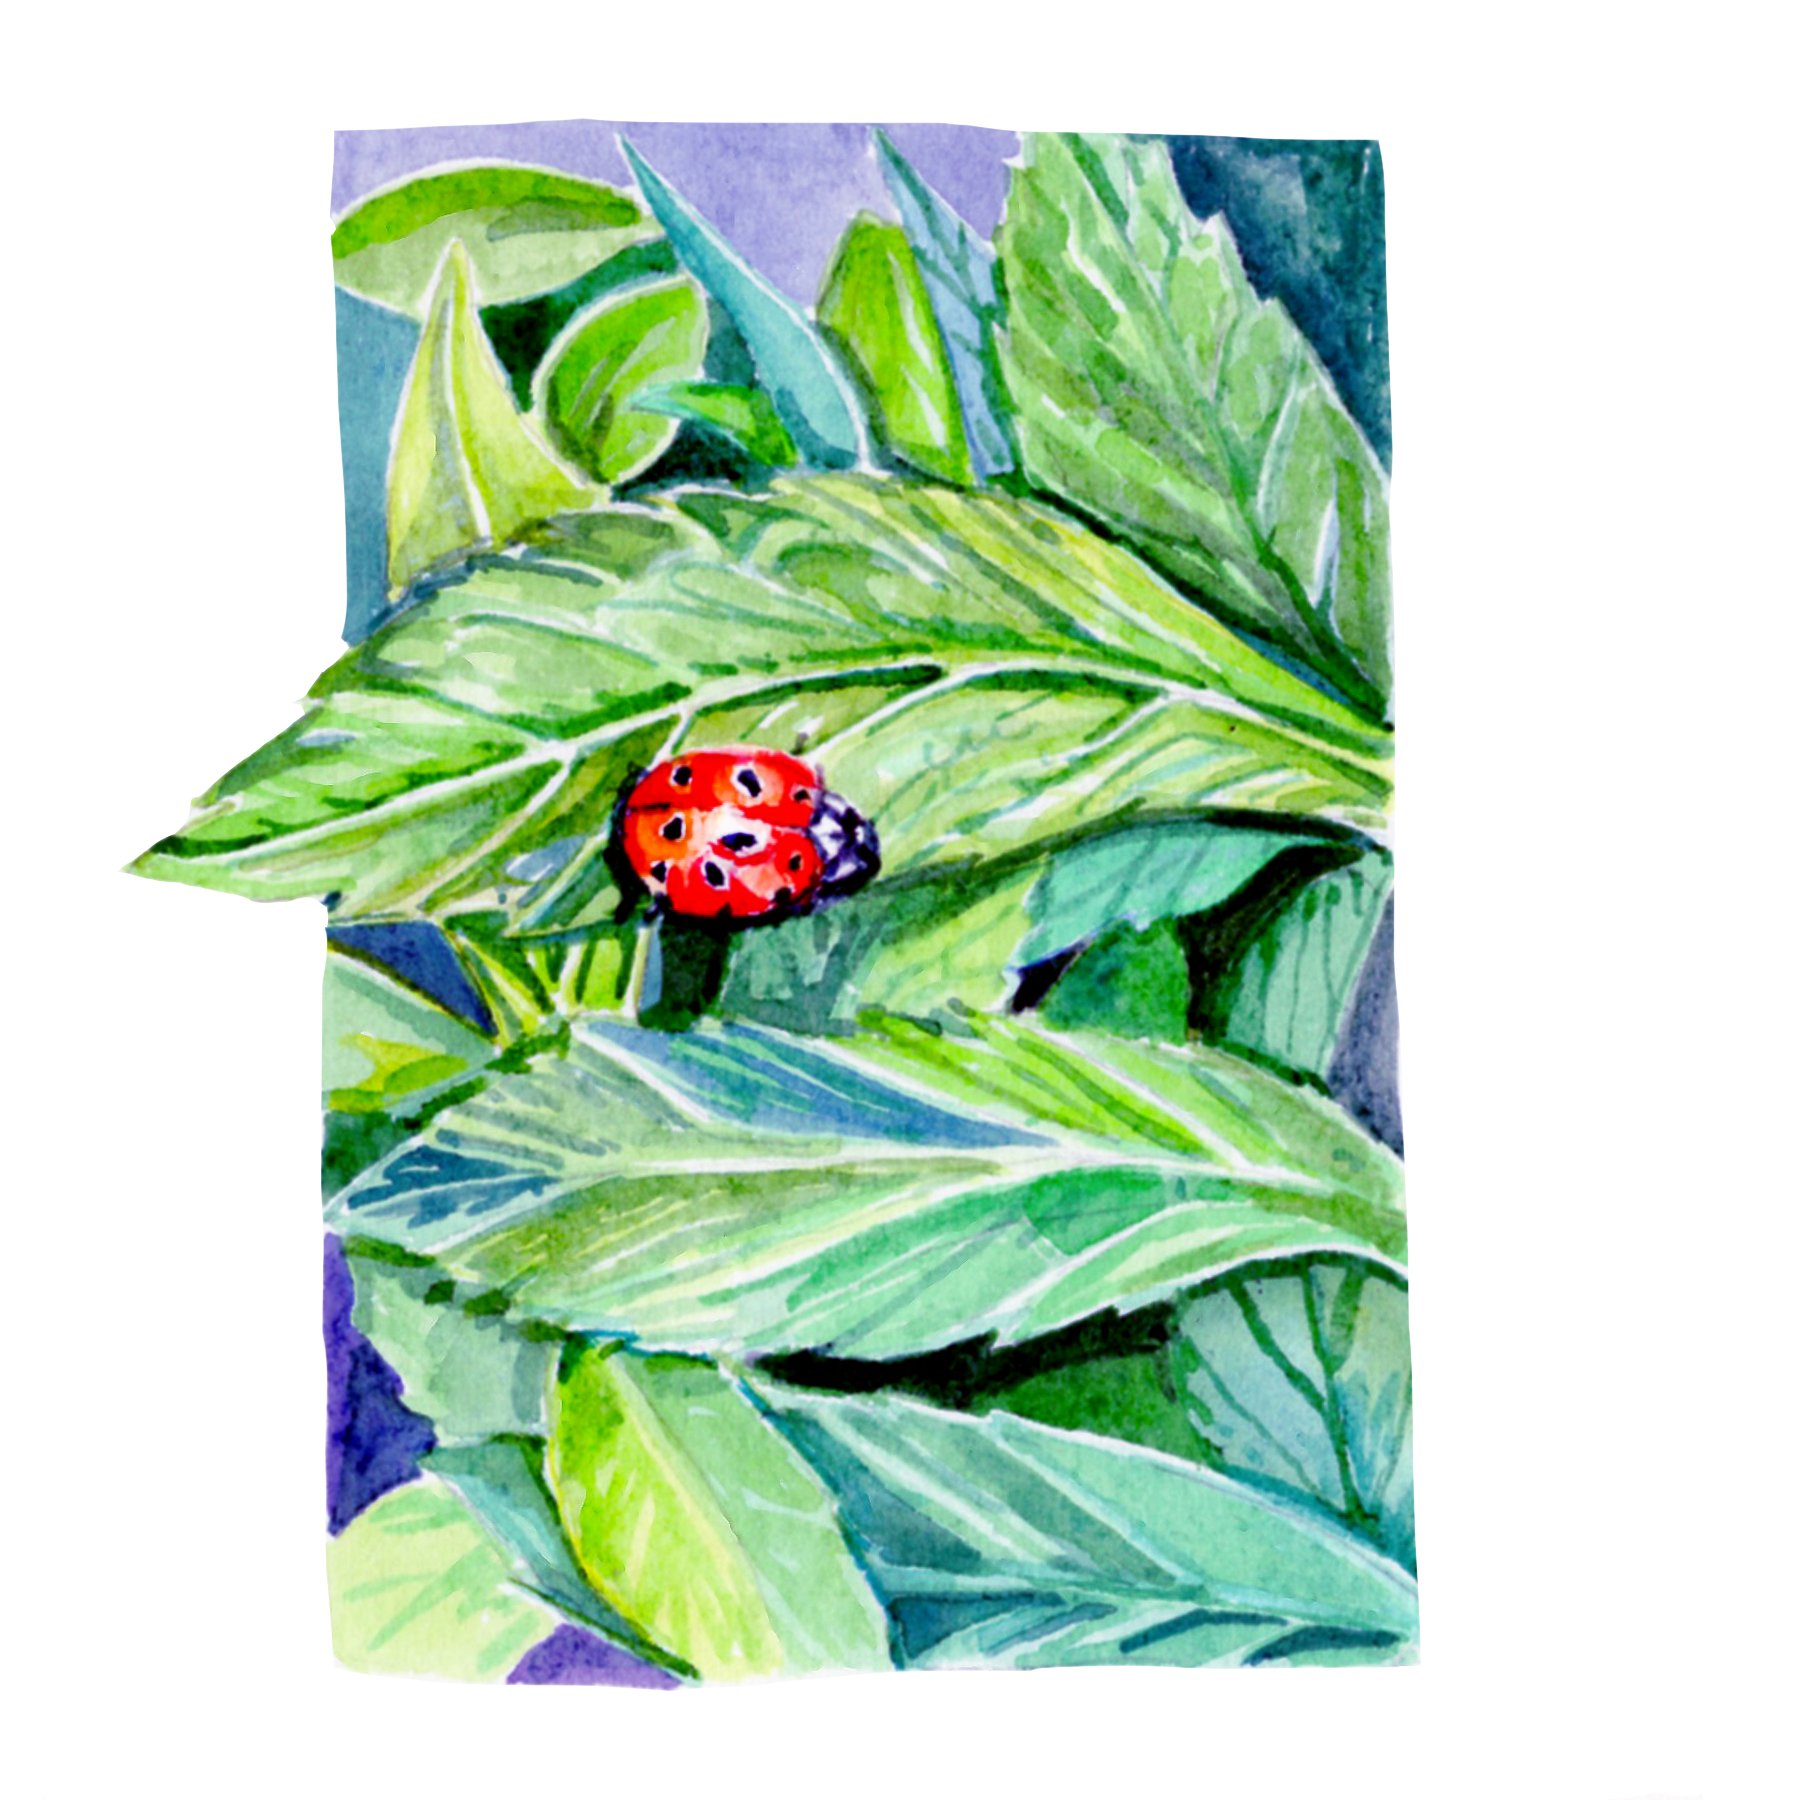 Ladybug on leaf.jpg